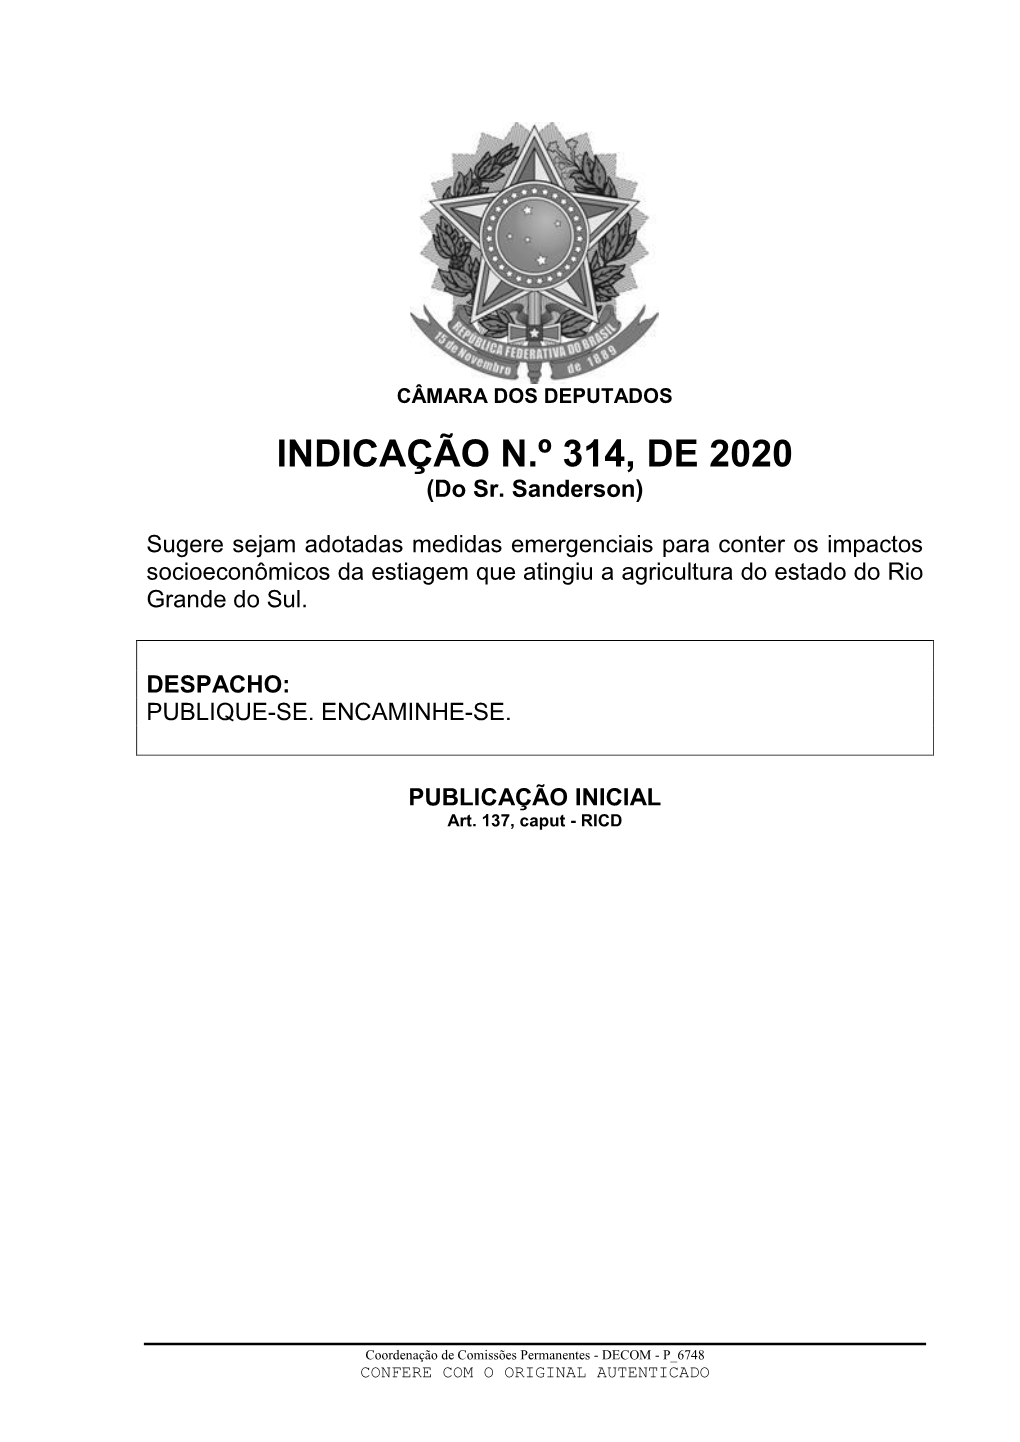 INDICAÇÃO N.º 314, DE 2020 (Do Sr